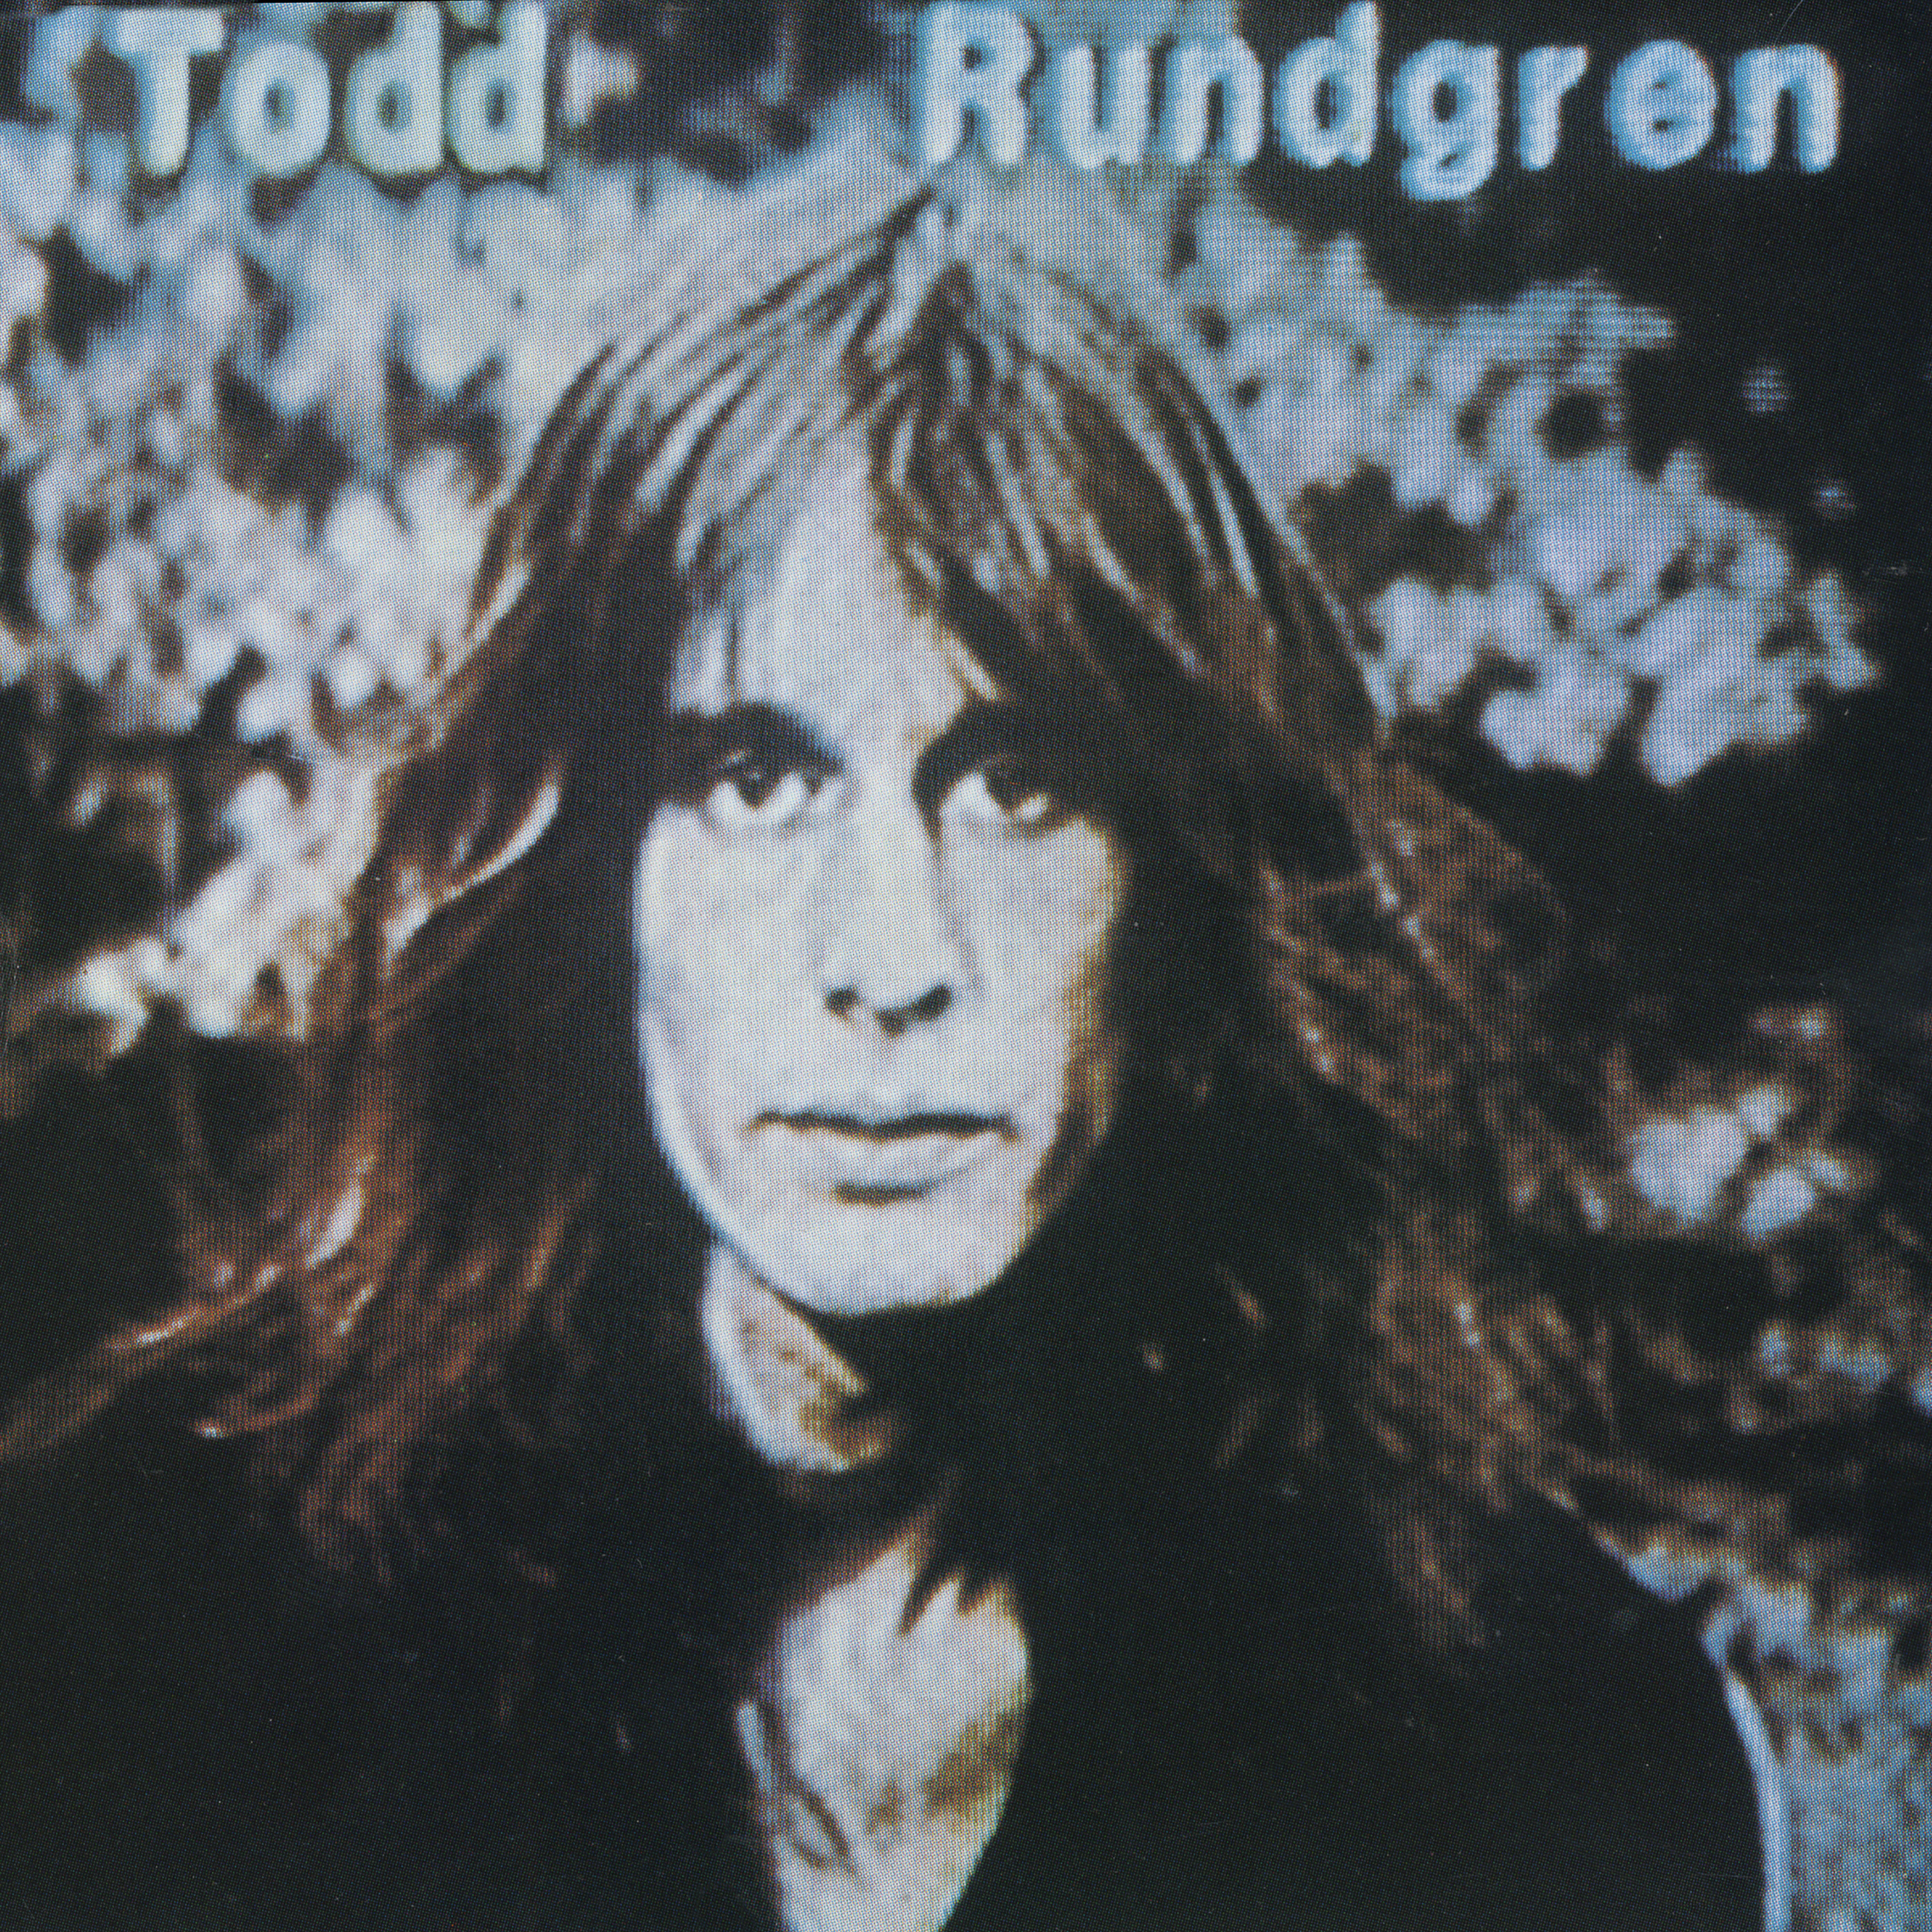 Todd Rundgren – Hermit of Mink Hollow